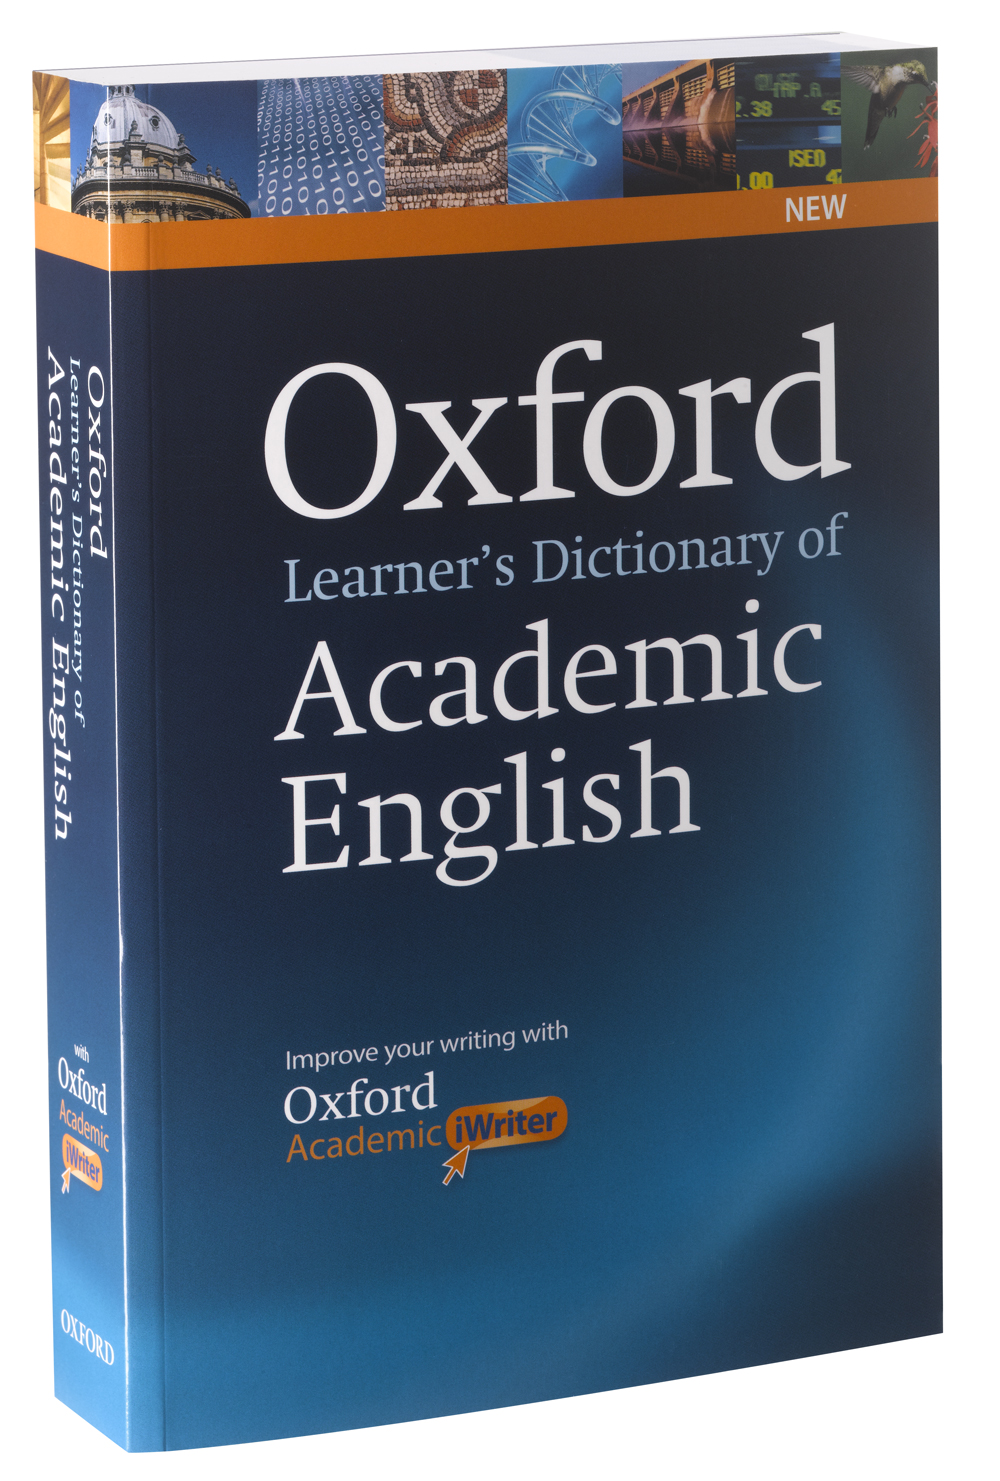 学術英語の習得と活用をサポートする オックスフォード の新 英英辞典 Oxford Learner S Dictionary Of Academic English オックスフォード大学出版局株式会社のプレスリリース